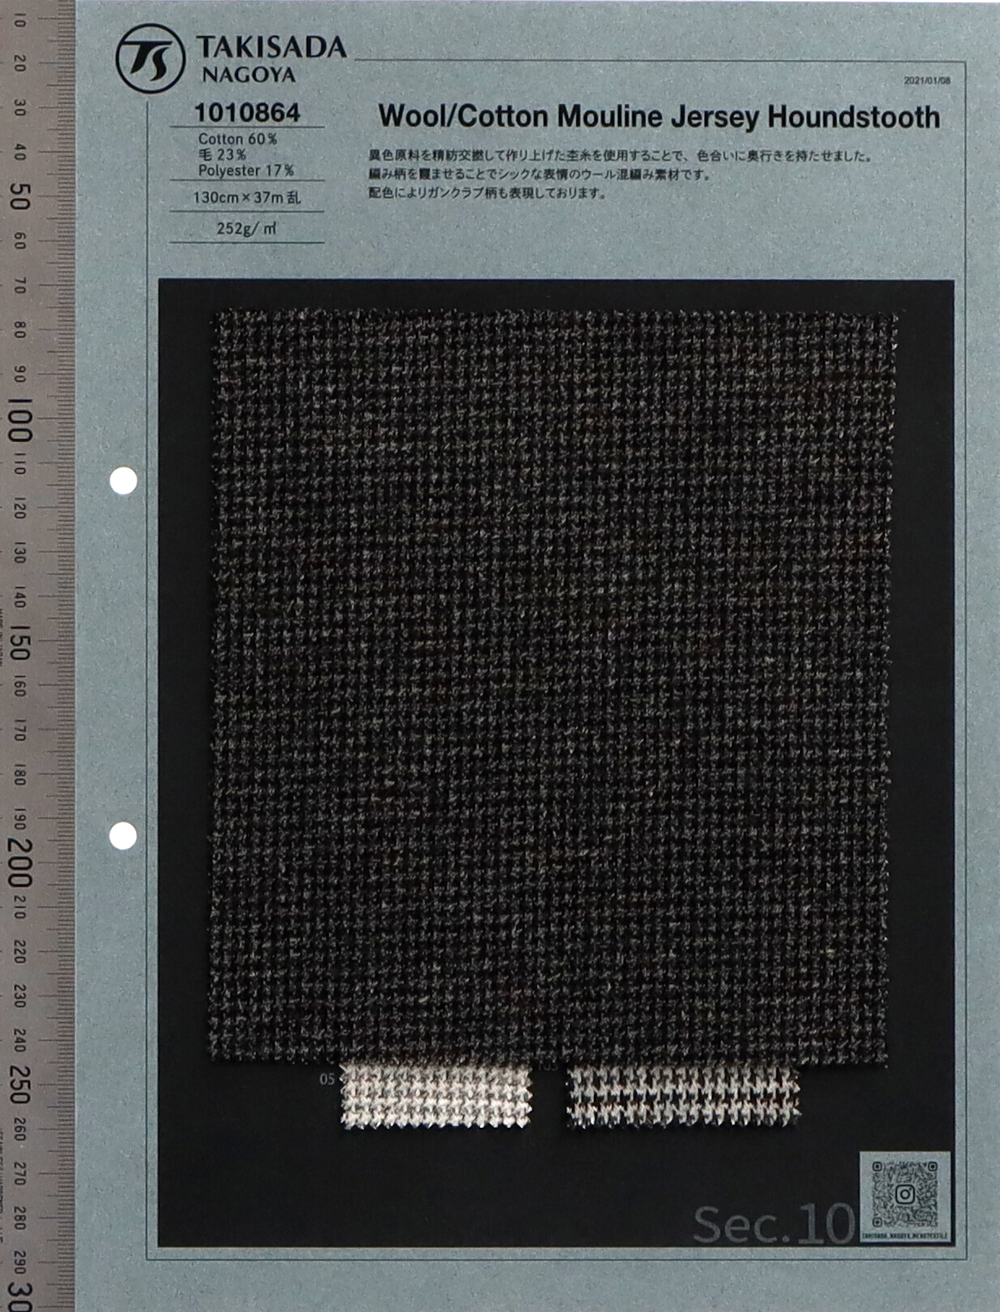 1010864 Padrão Houndstooth De Lã/algodão Melange[Têxtil / Tecido] Takisada Nagoya